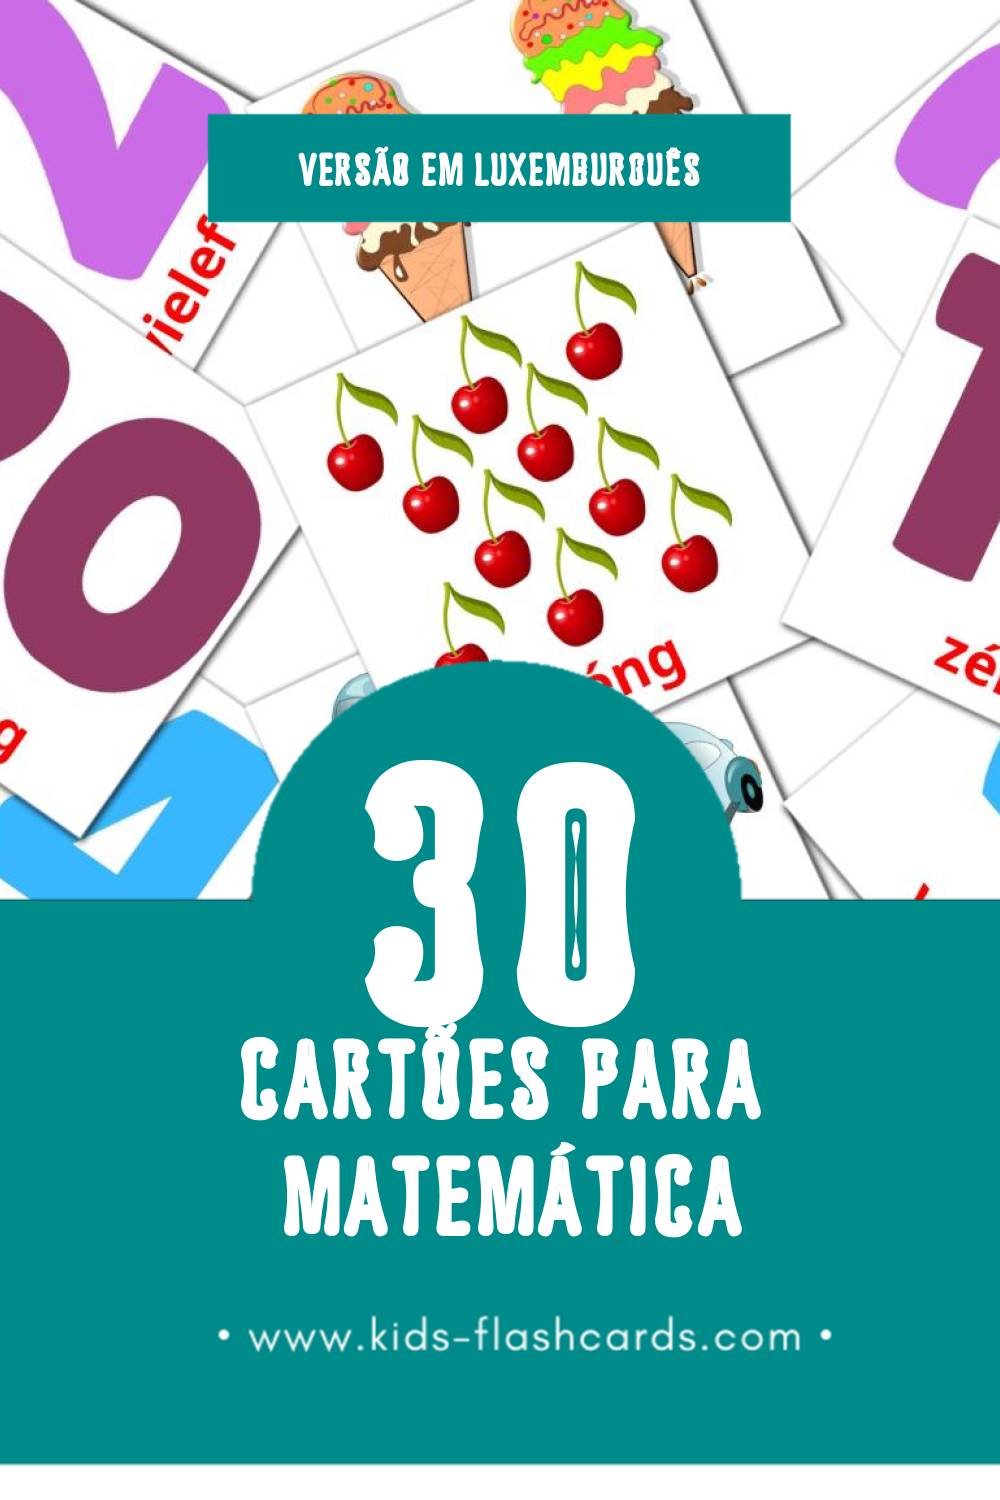 Flashcards de Mathematik Visuais para Toddlers (30 cartões em Luxemburguês)